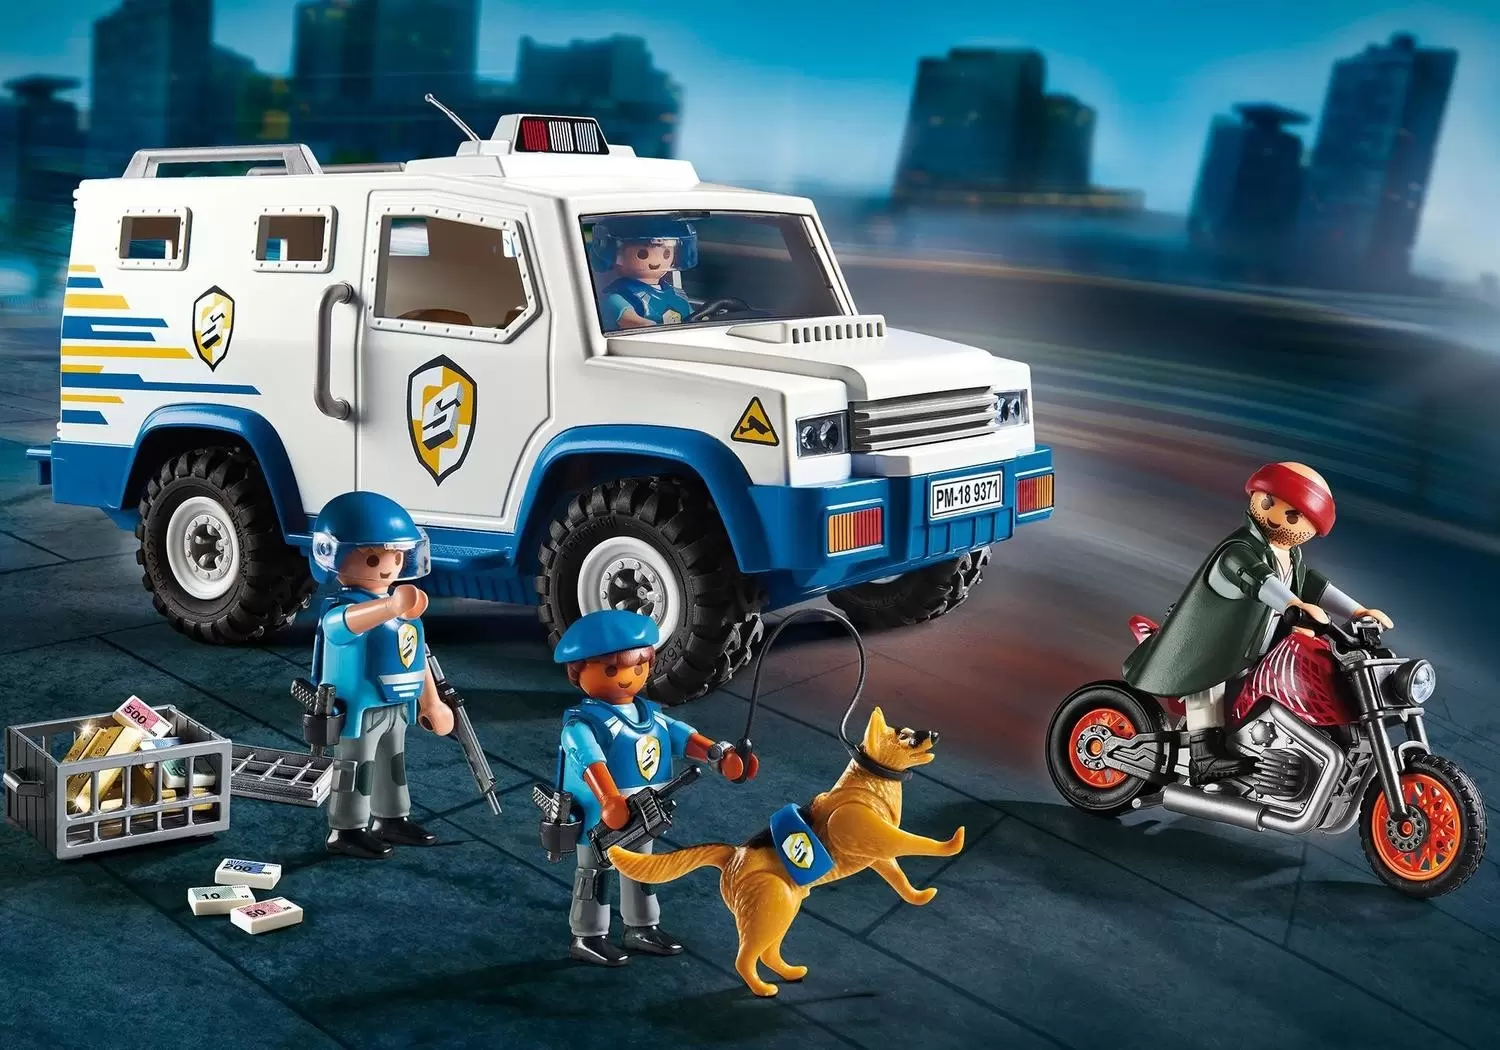 Fourgon blindé Playmobil avec convoyeurs de fonds 9371 - Police Playmobil